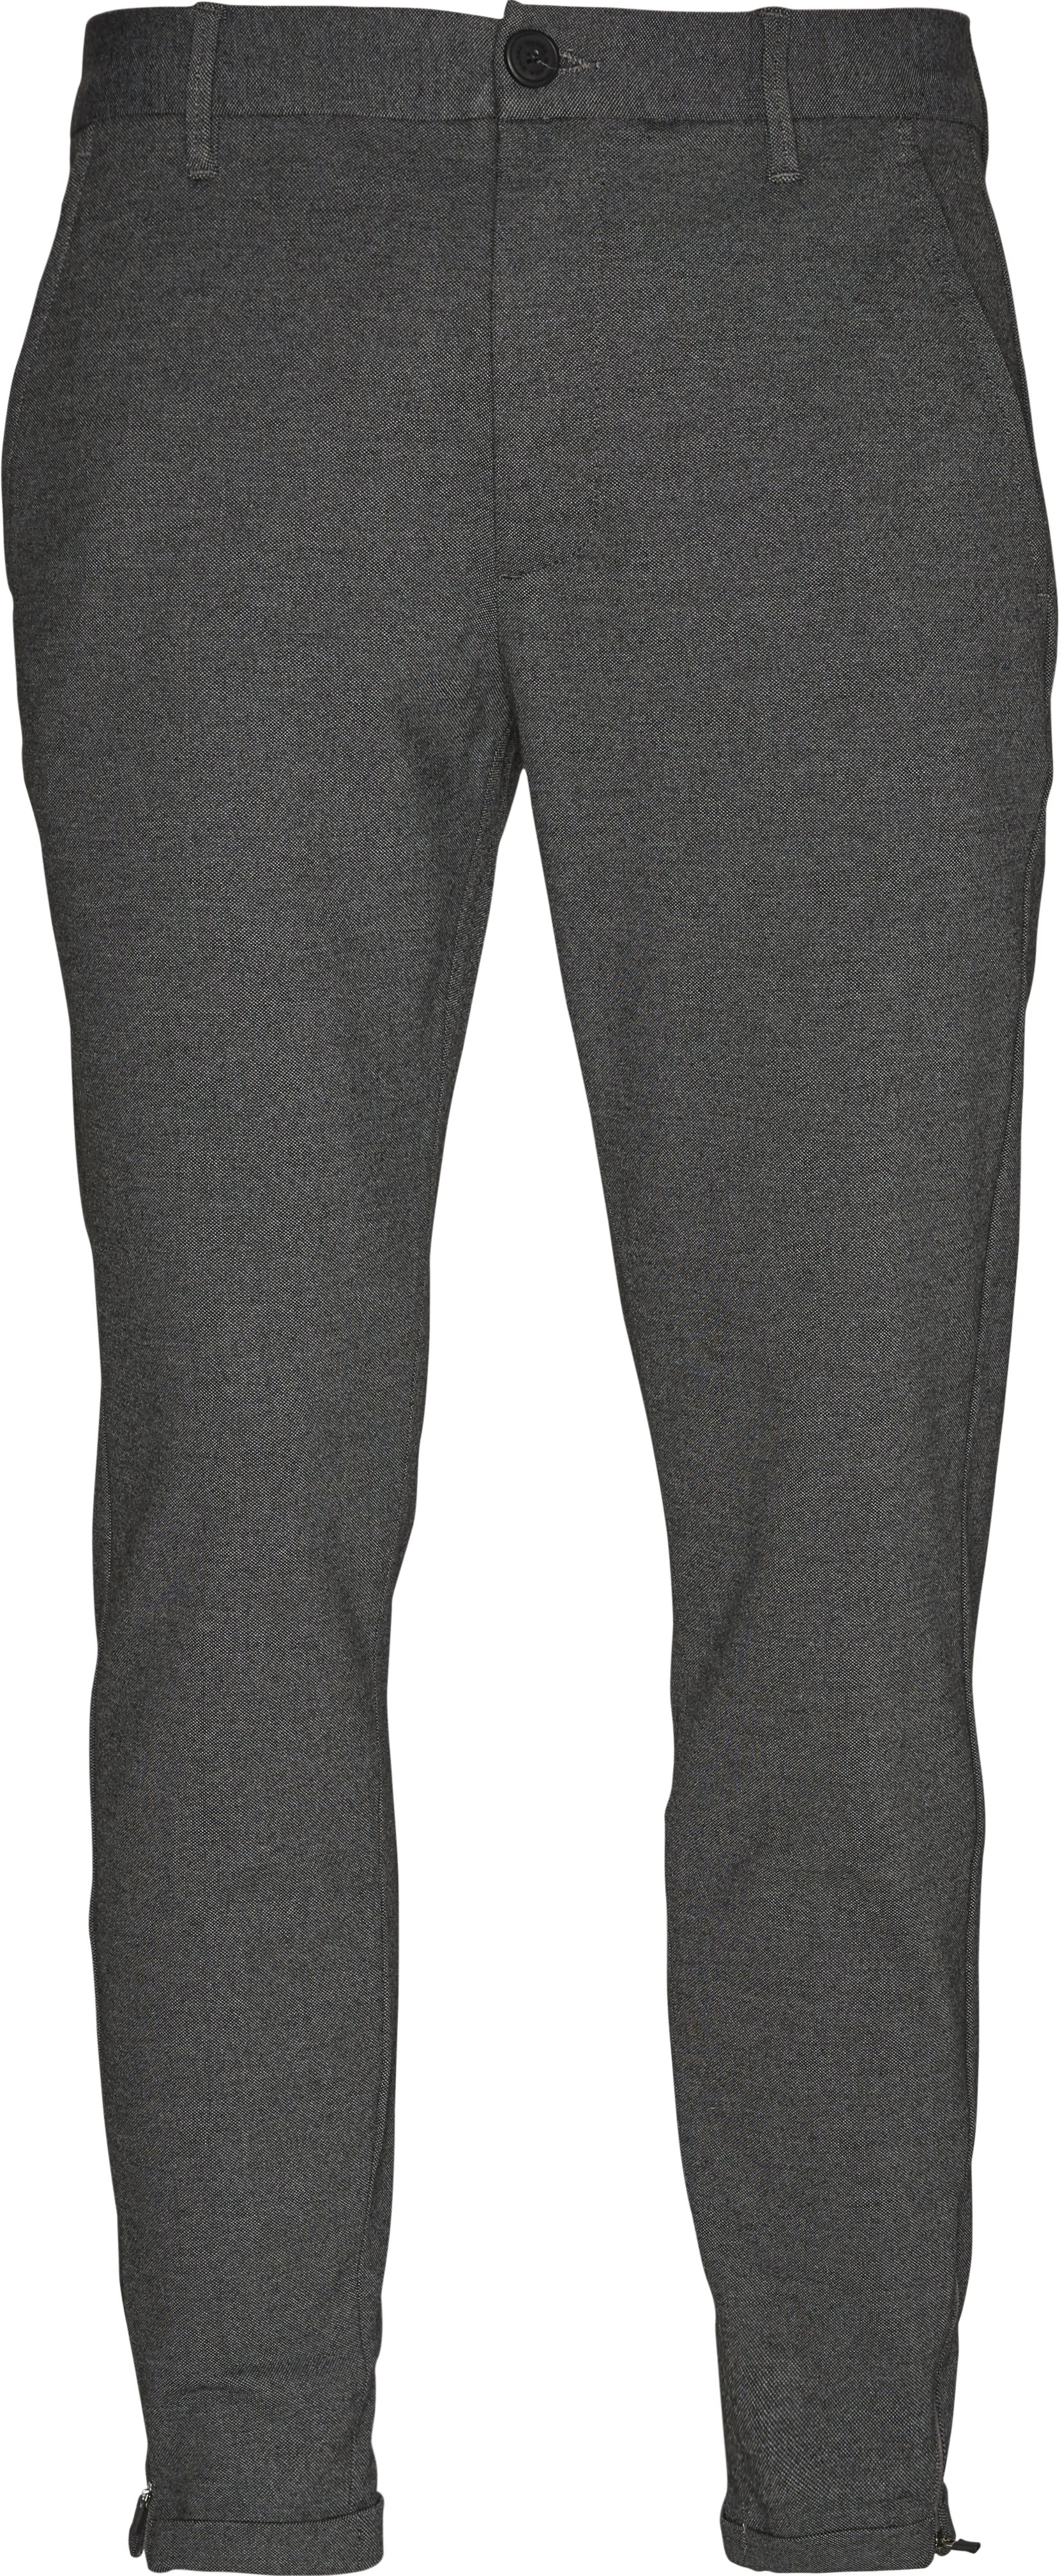 Pisa Jersey Bukser - Bukser - Tapered fit - Grå